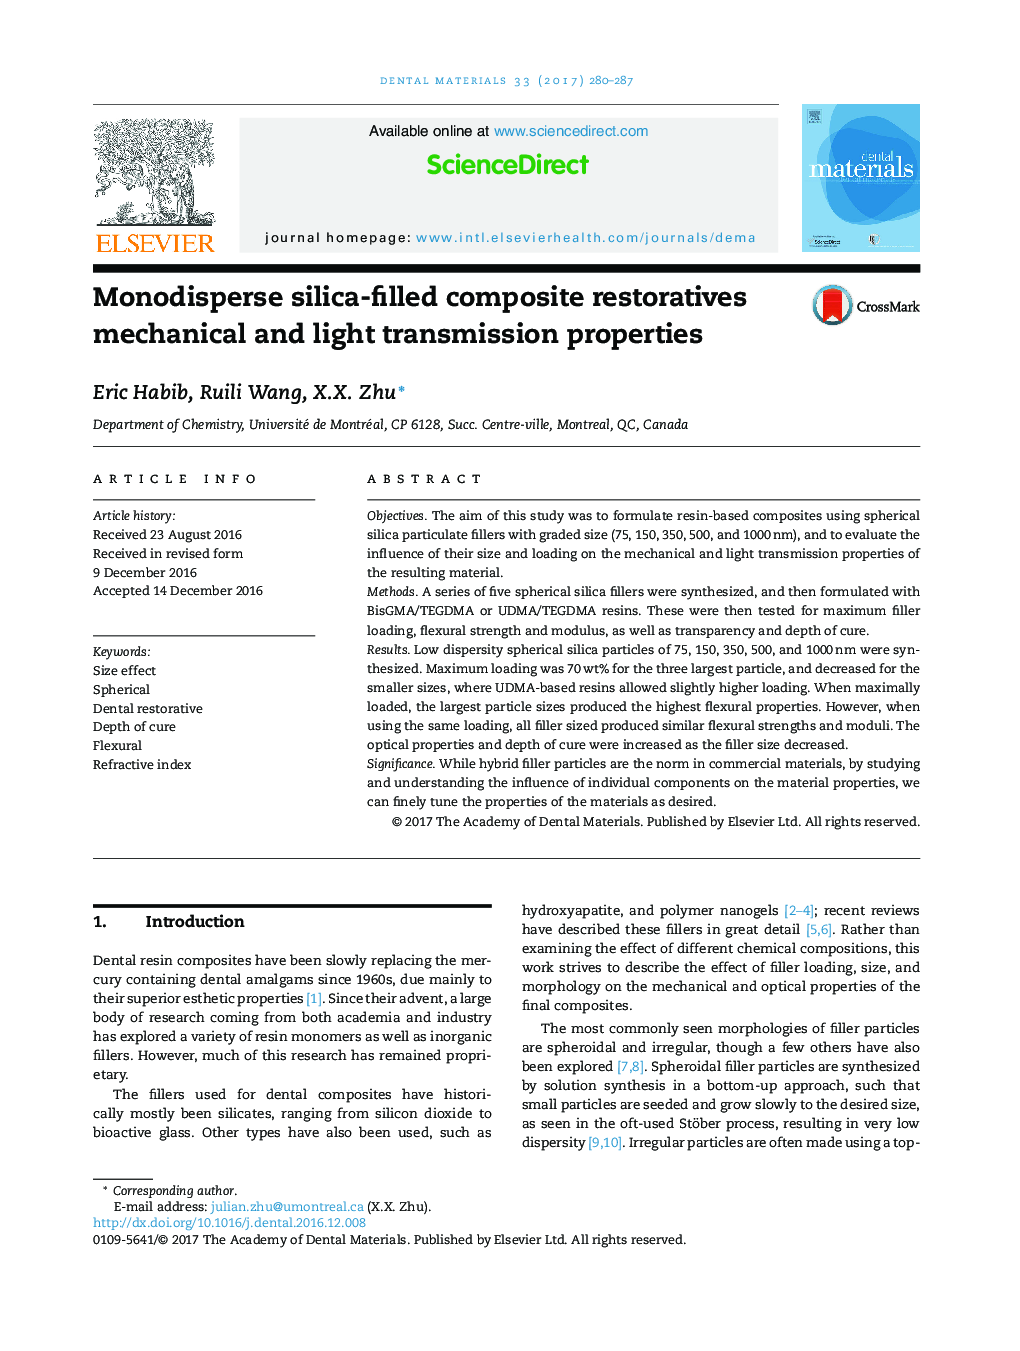 خواص مکانیکی و نوری کامپوزیت های مونواسیداسیون سیلیکا دارای خواص مکانیکی و نوری هستند 